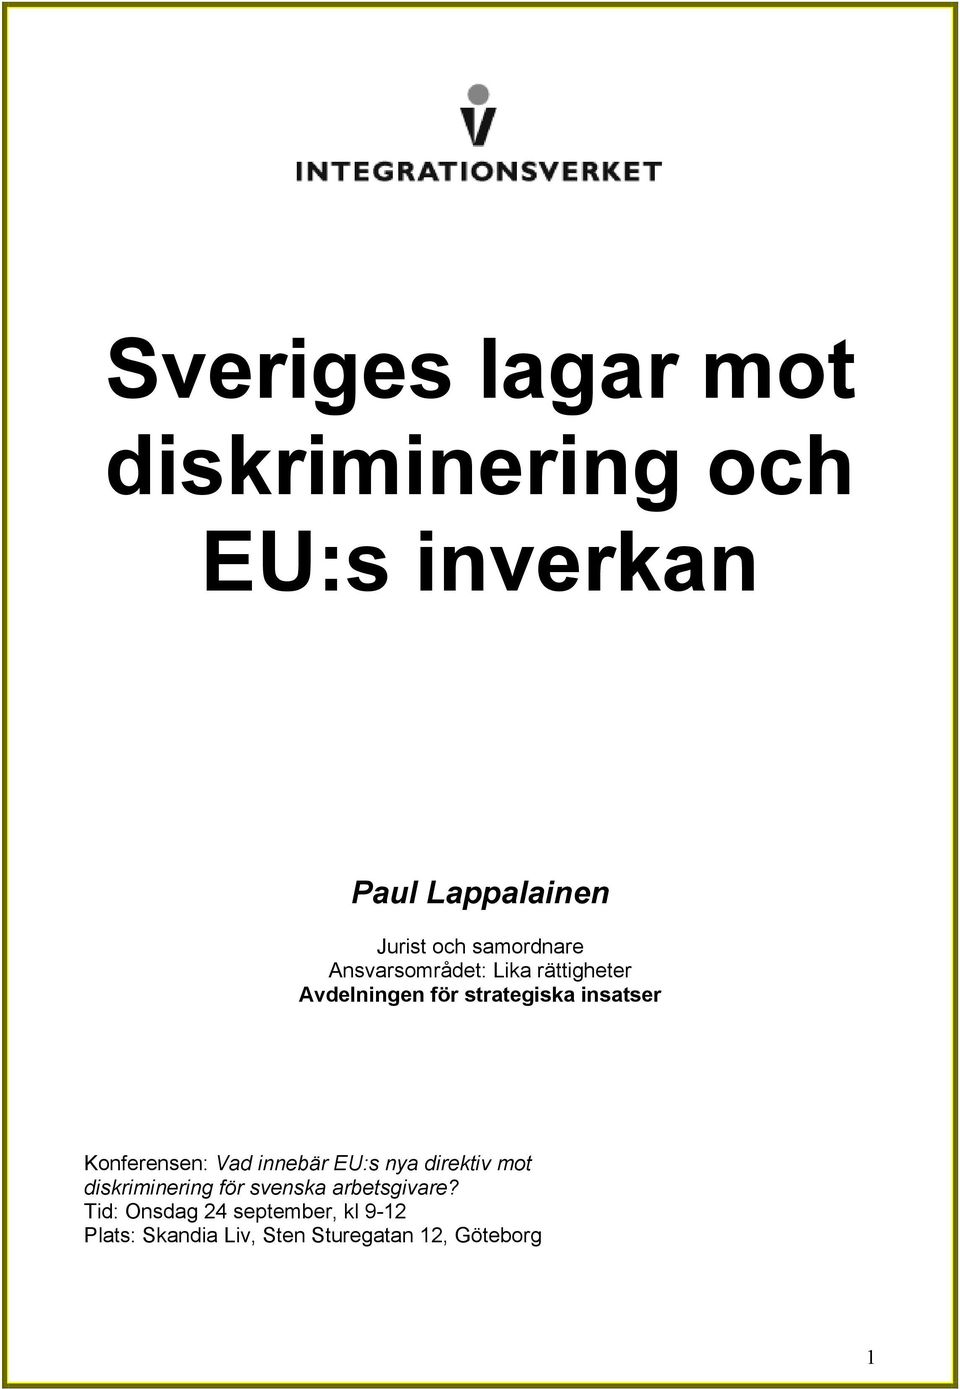 Konferensen: Vad innebär EU:s nya direktiv mot diskriminering för svenska